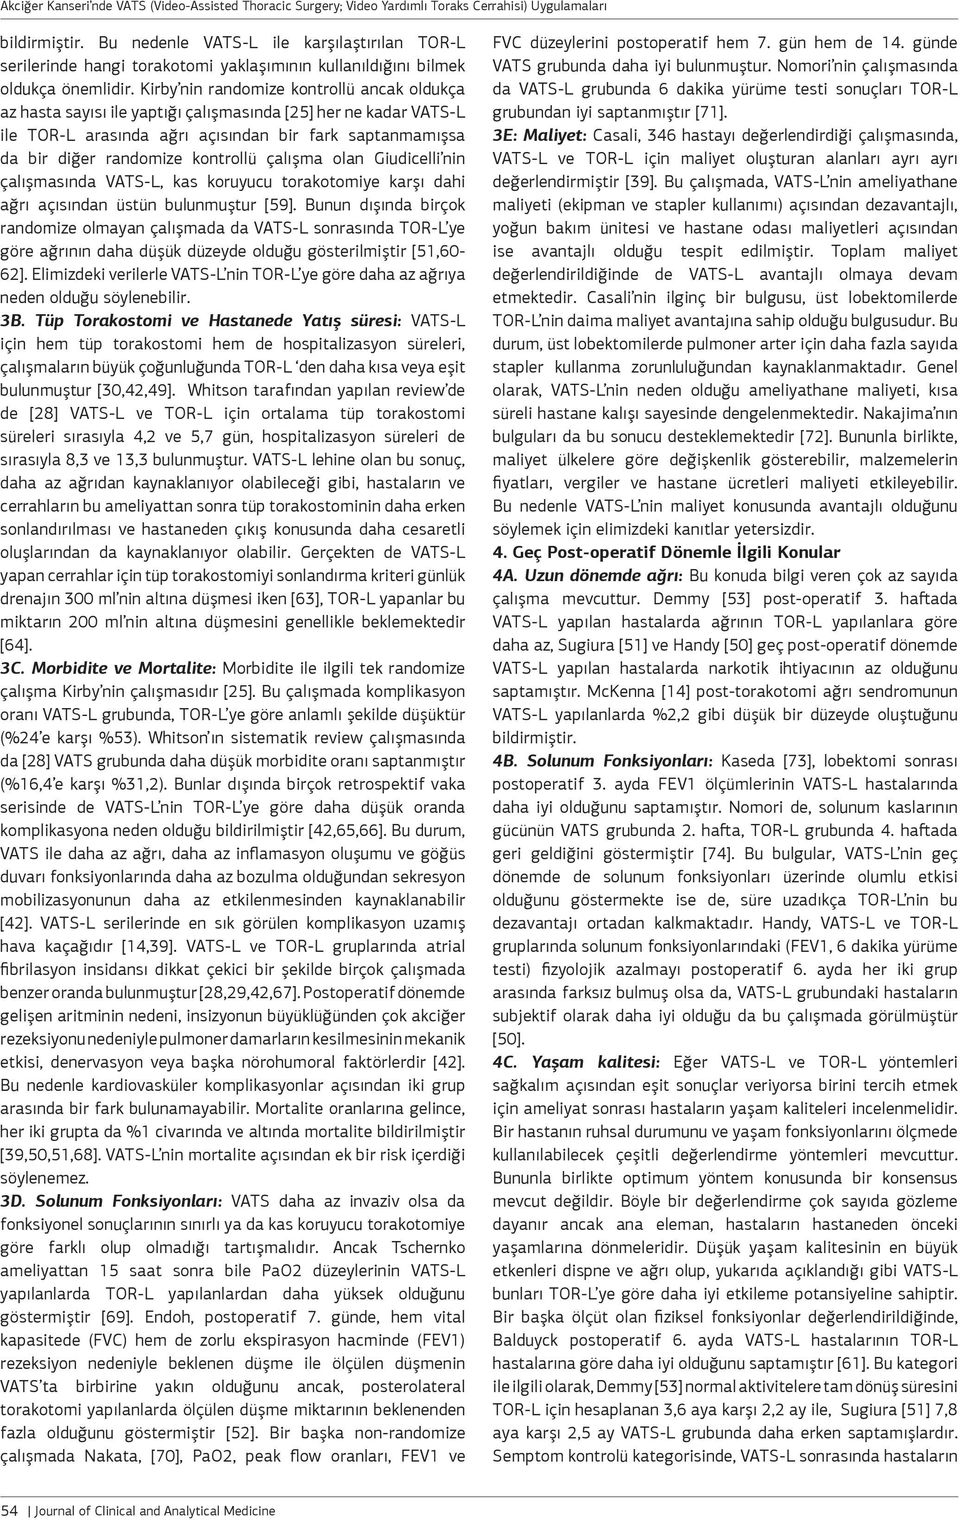 çalışma olan Giudicelli nin çalışmasında VATS-L, kas koruyucu torakotomiye karşı dahi ağrı açısından üstün bulunmuştur [59].